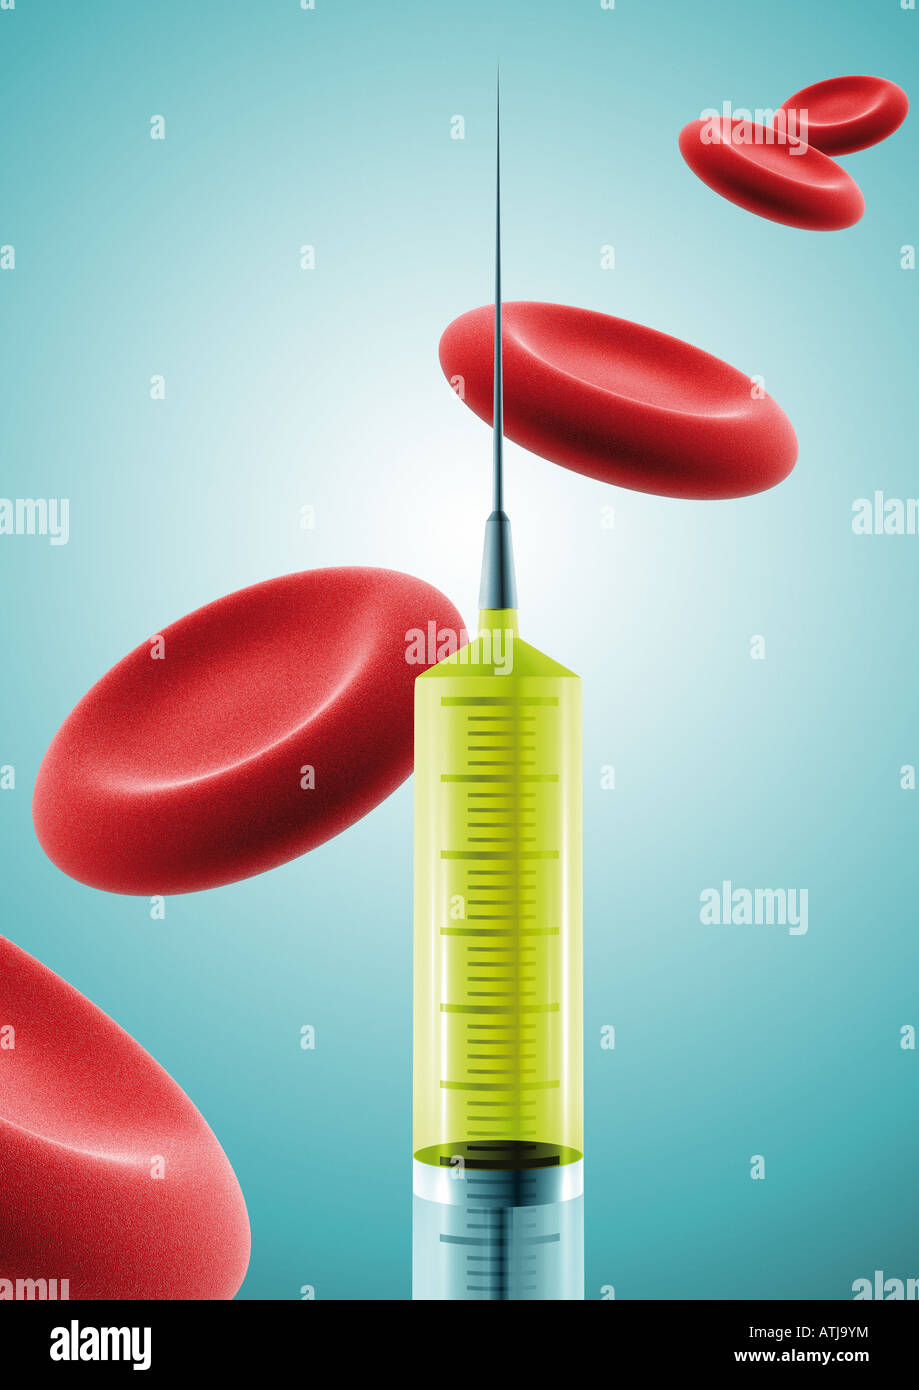 syringe and blood platelets Spritze und Blutplättchen Stock Photo